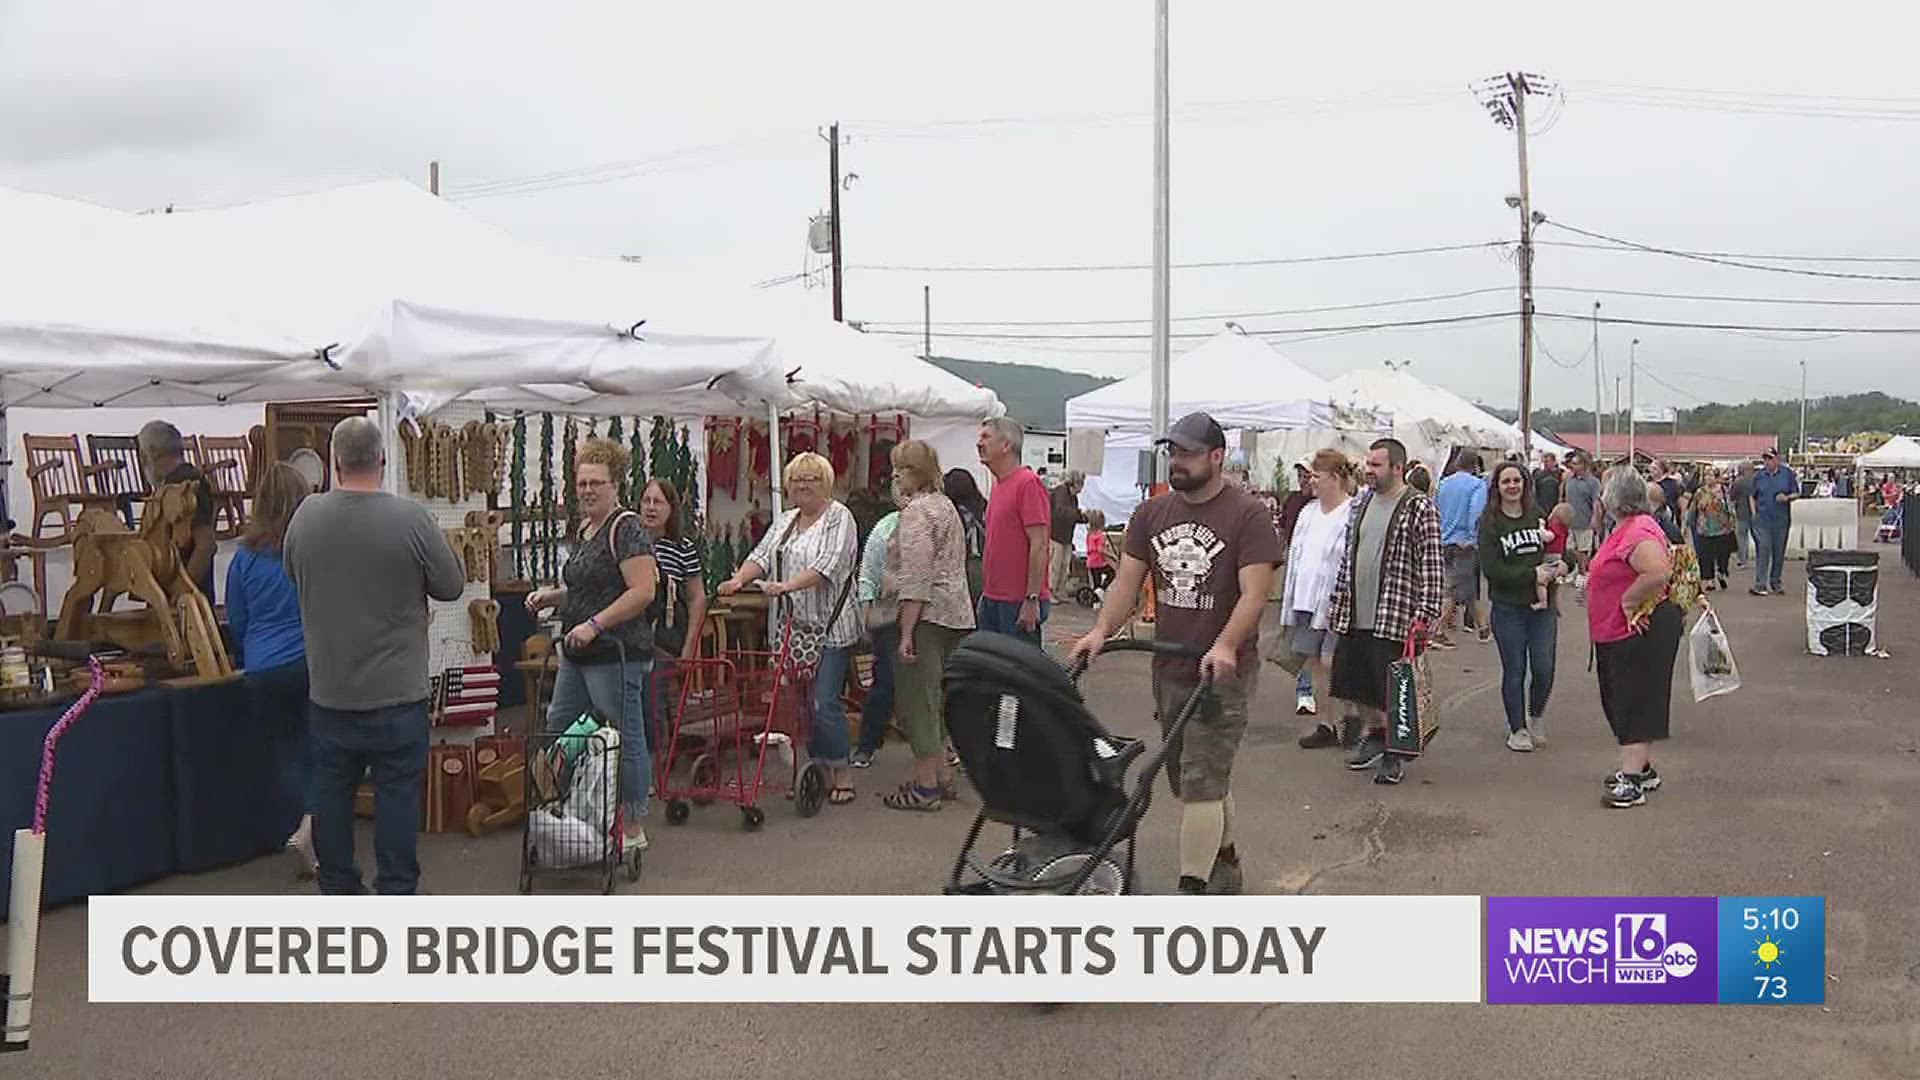 Covered Bridge Festival follows Bloomsburg Fair